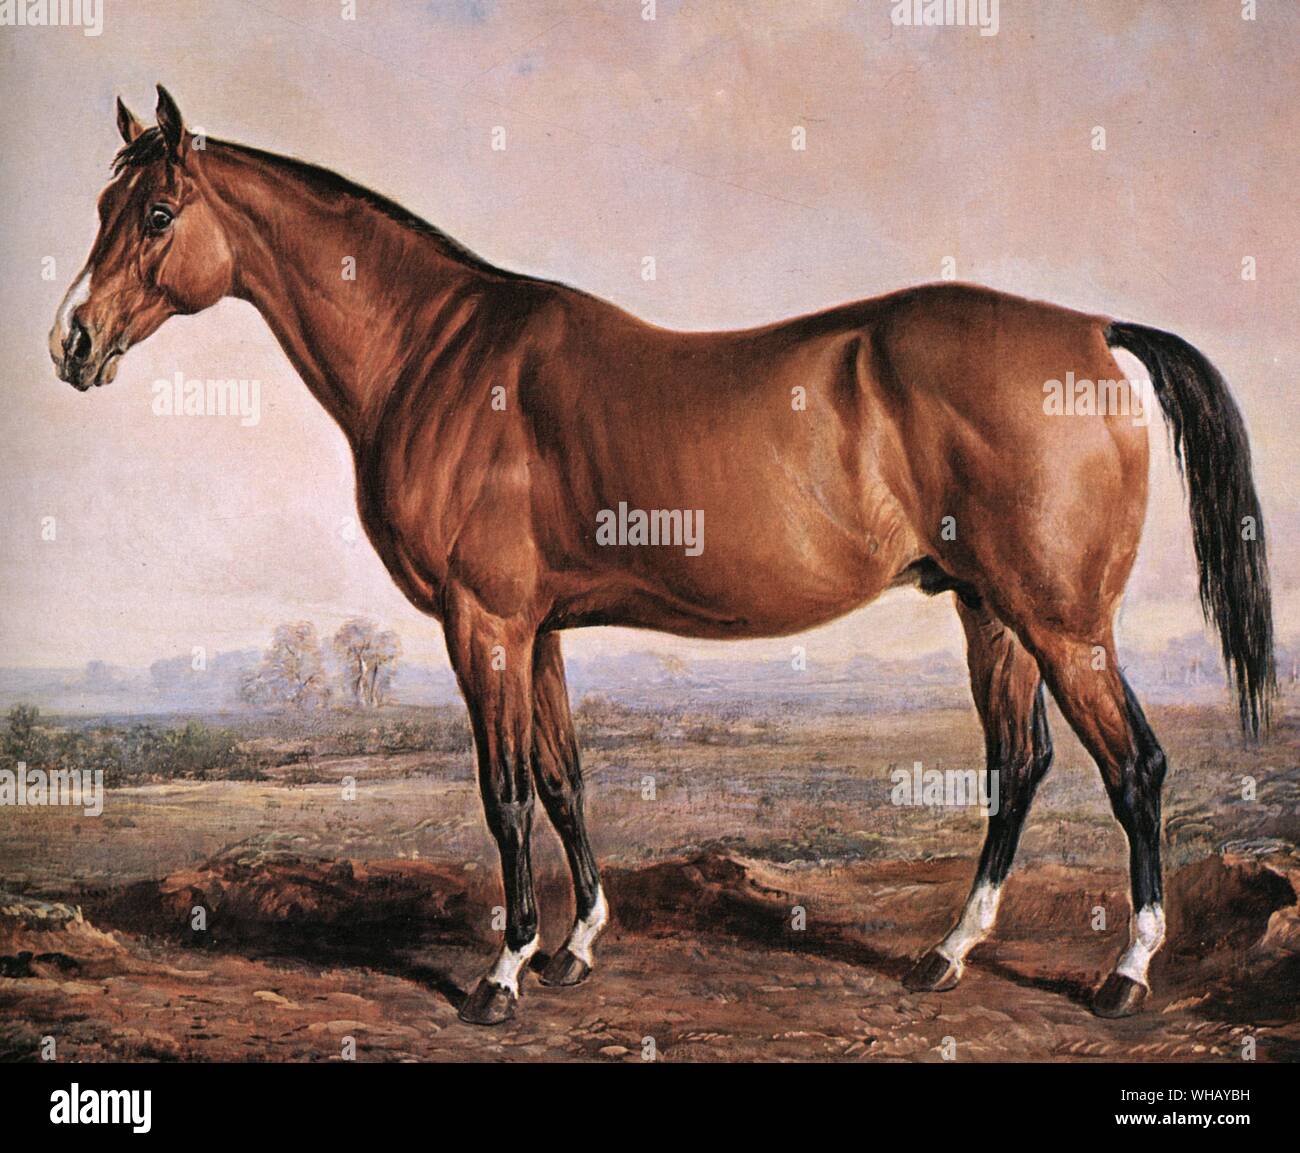 Le célèbre cheval de course, Lexington, est né en 1850, s'élevait à 15 mains (63 pouces), 3 pouces de haut, et le 2 avril 1855, a établi un record au cours Metaire à la Nouvelle Orléans en exécutant 4 milles en 7 minutes, 19 secondes 3/4.. Il a été le meilleur cheval produites en Amérique au 19e siècle. Comme l'homme O' War 67 ans plus tard, il représente une très longue lignée mâle américain, bien qu'il y avait beaucoup de sang importés récemment close up dans son pedigree. Il avait de l'endurance et de courage sans limites, et aussi la vitesse de pulvérisation qui lui a permis de distance ses adversaires dans de nombreuses courses het-. Il est devenu l'un des Banque D'Images